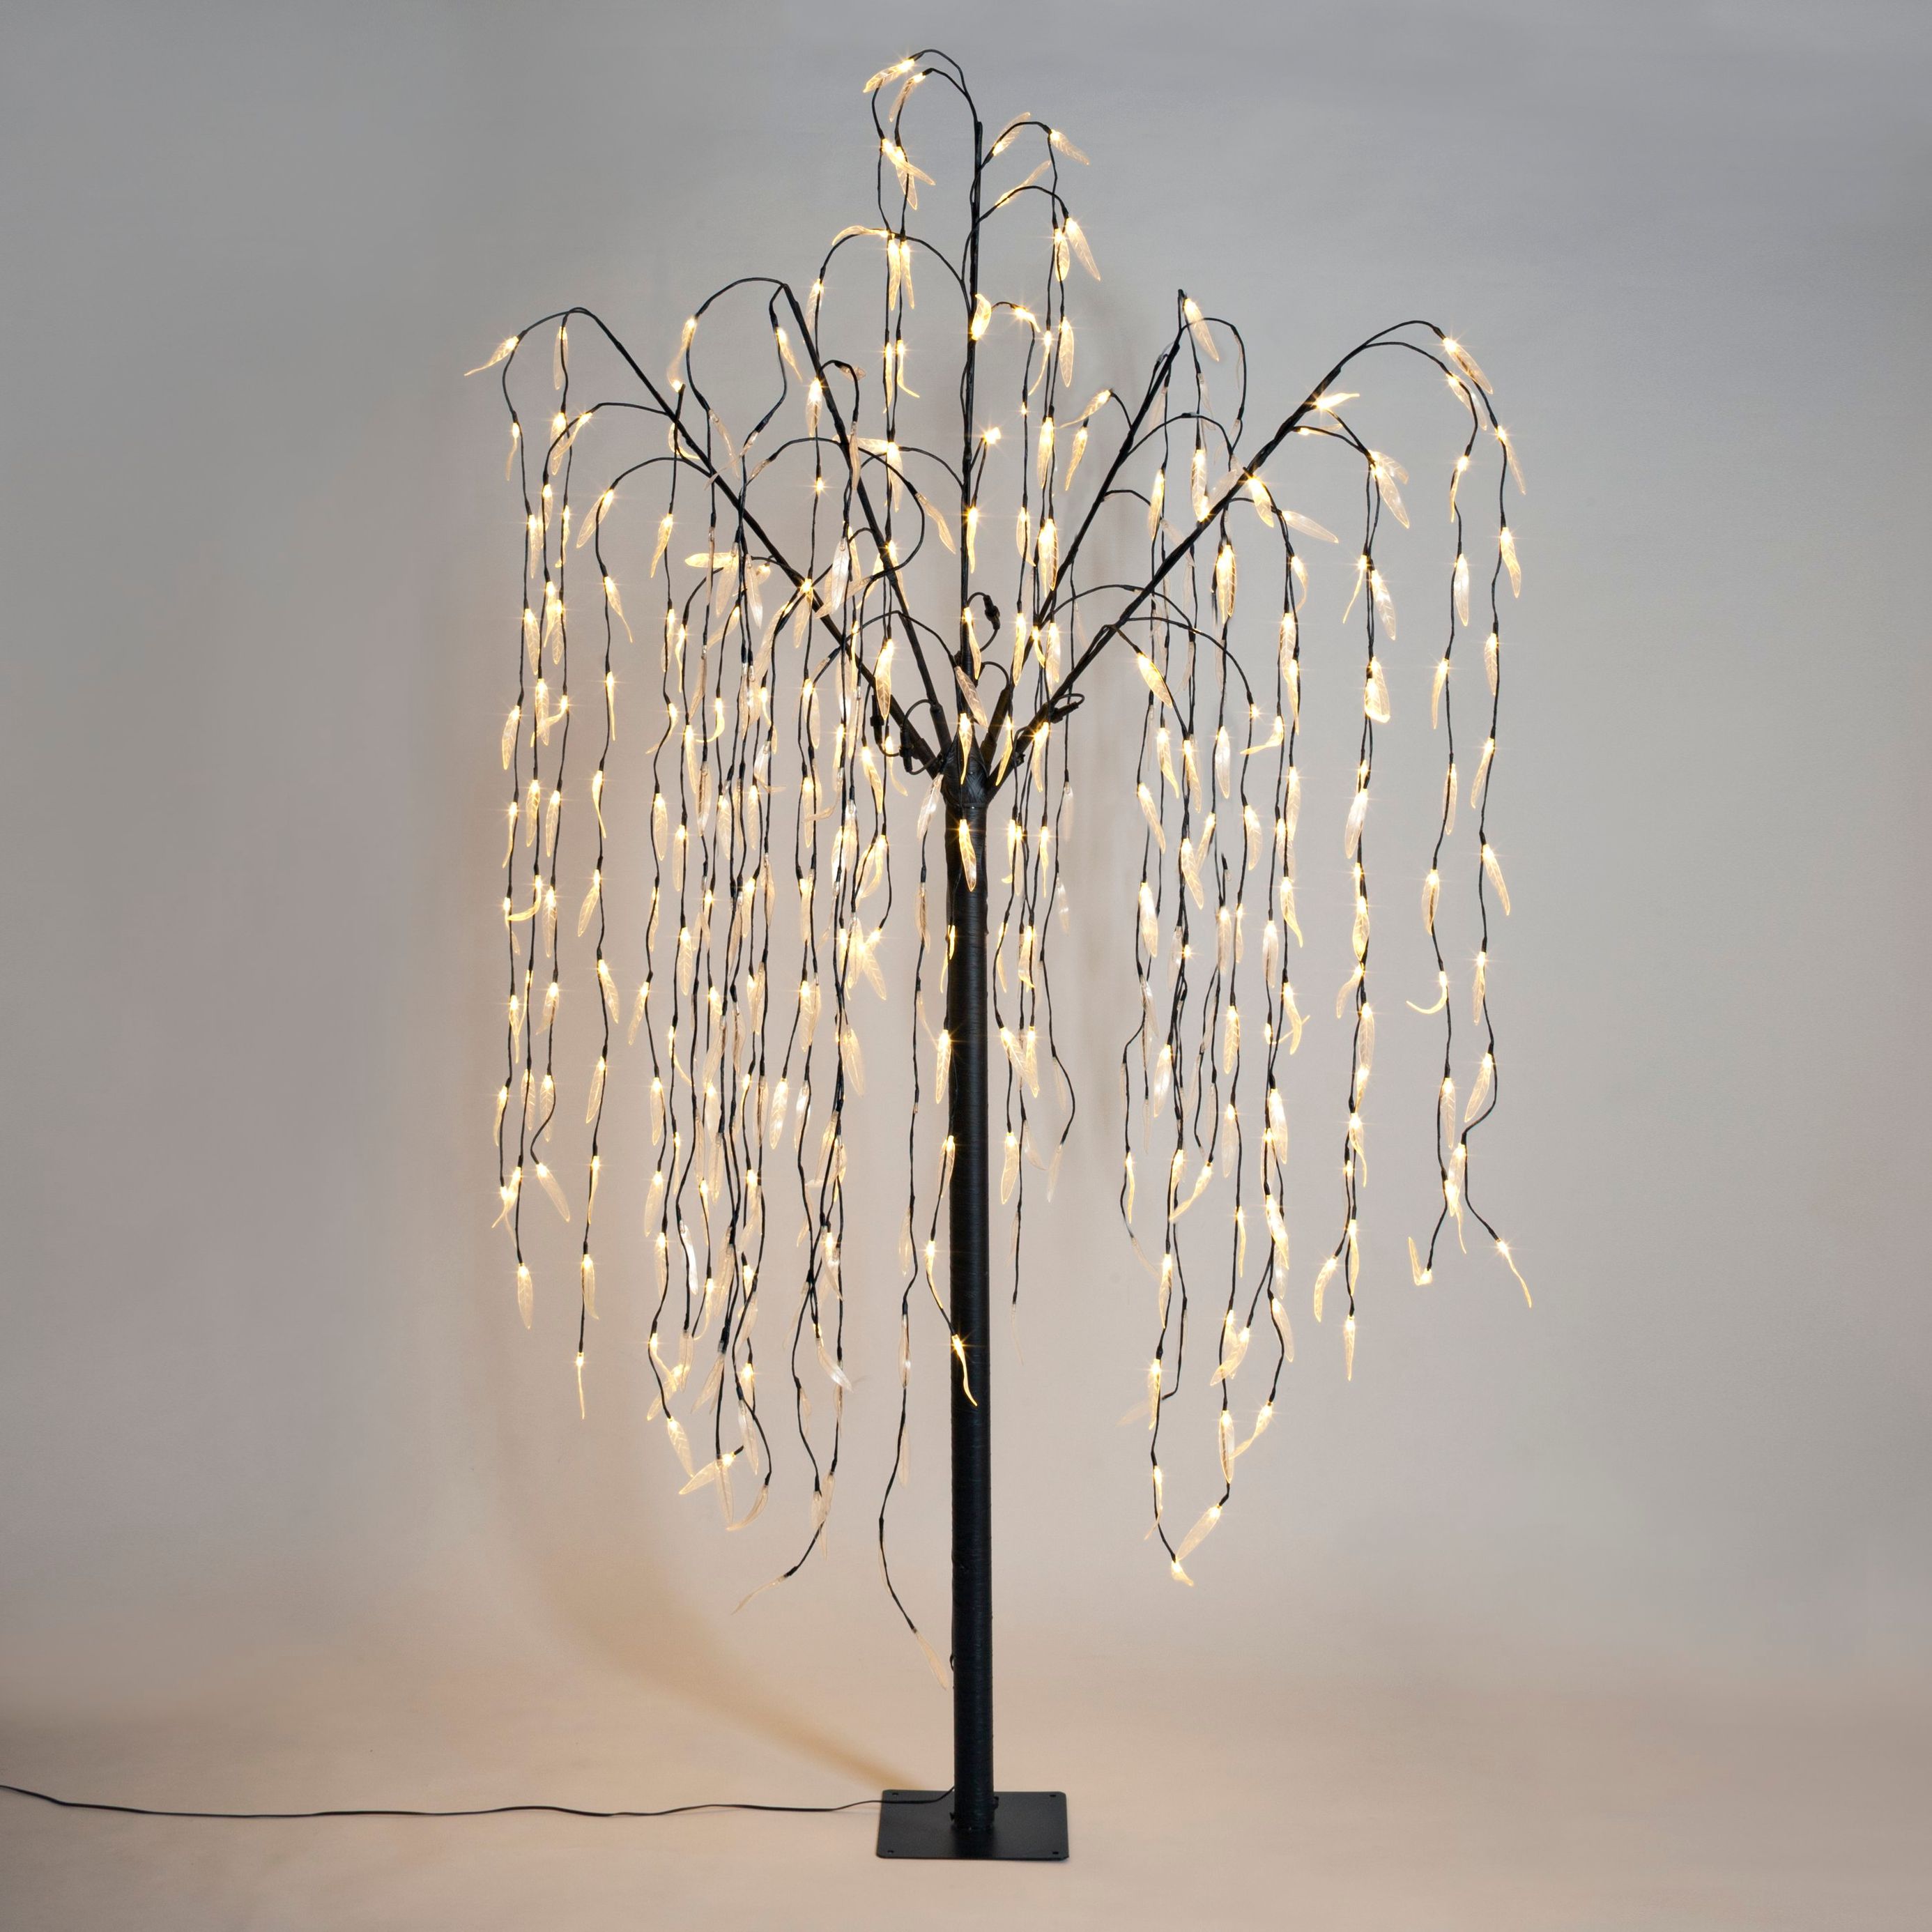 LED-Baum Hängeweide, 250 cm jetzt bei Weltbild.de bestellen